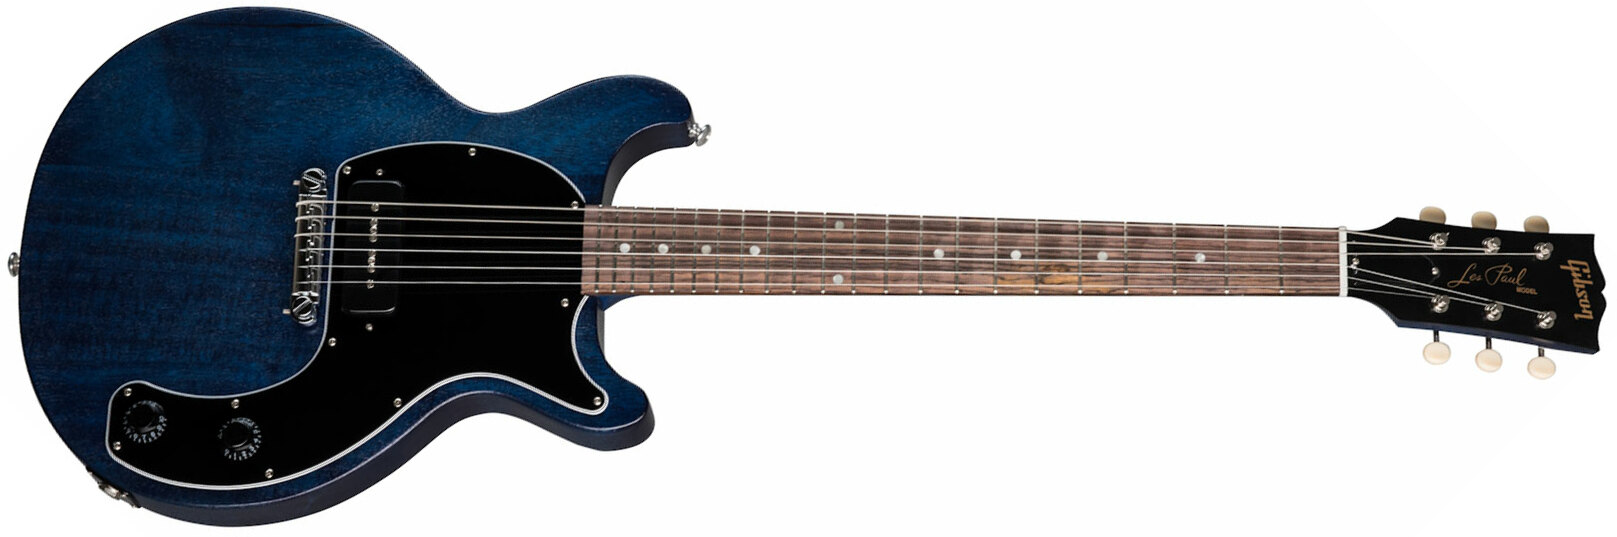 Gibson Les Paul Junior Tribute Dc Modern P90 - Blue Stain - Guitarra eléctrica de doble corte - Main picture